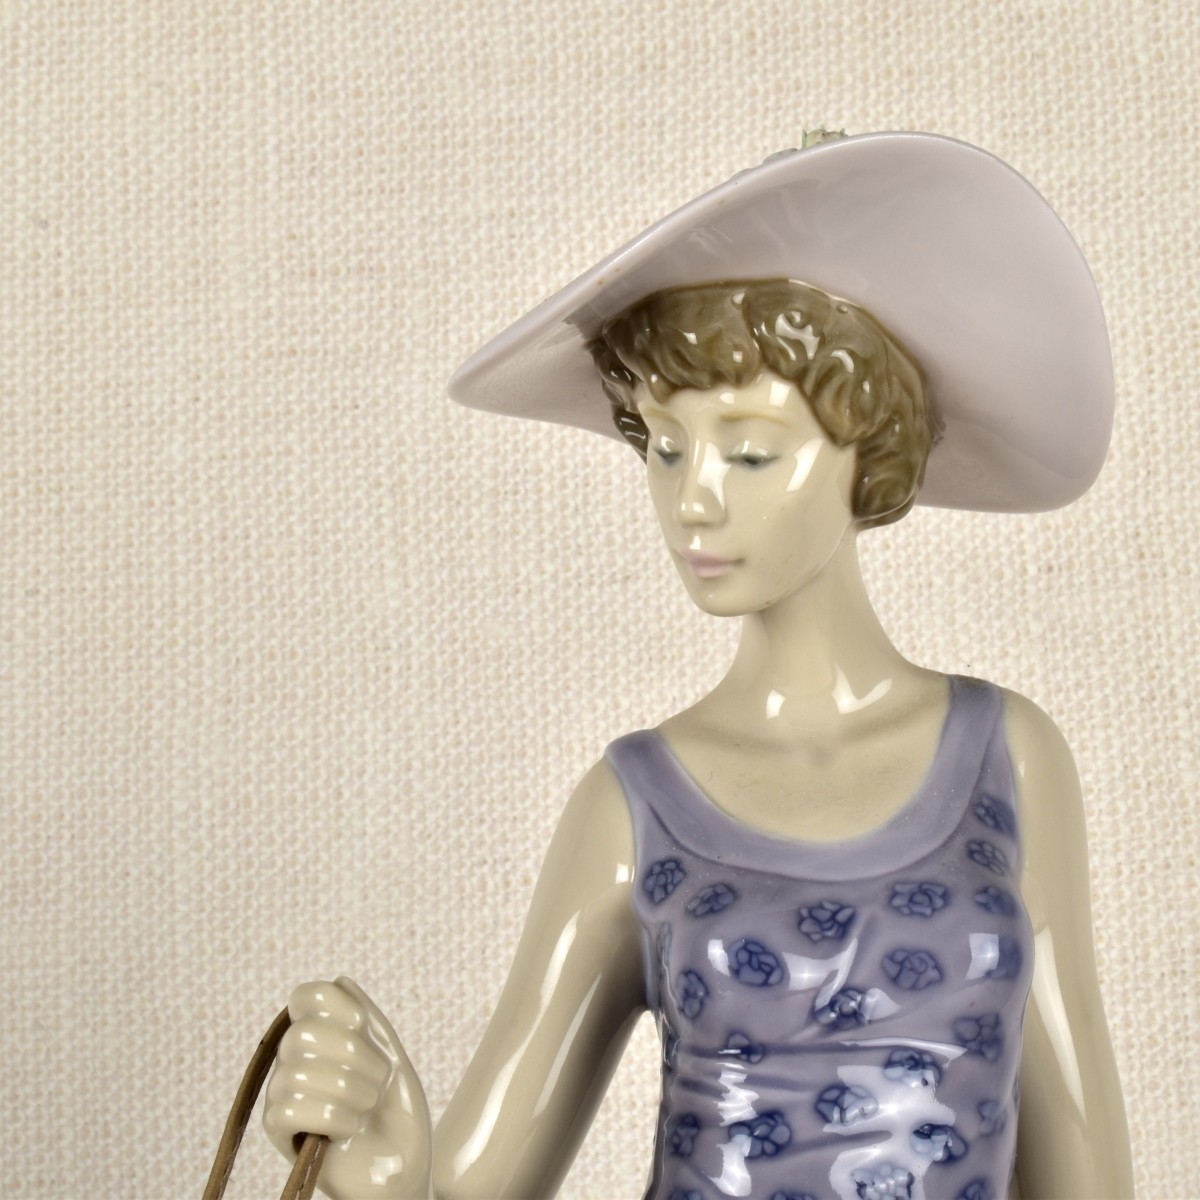 Lladro Figurine of a Lady